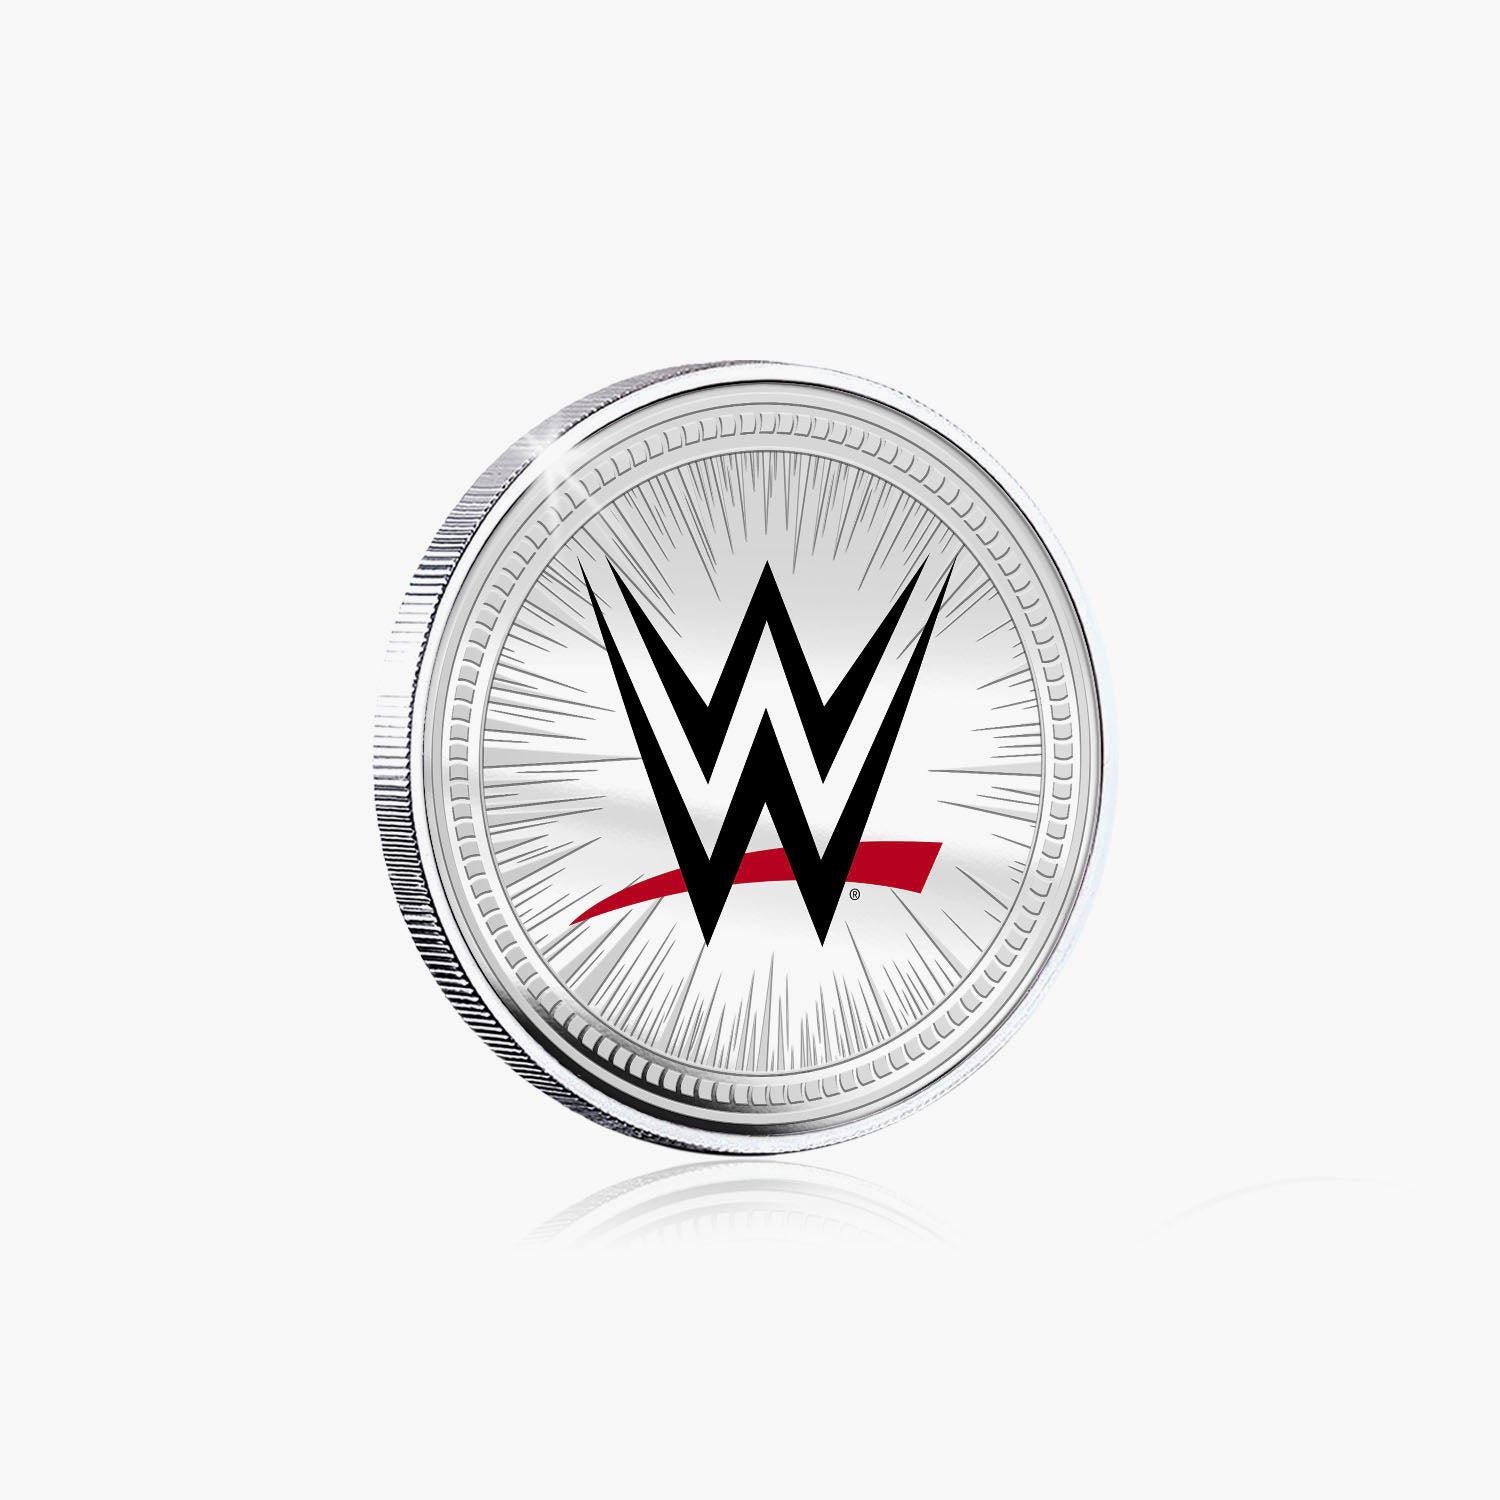 WWE Commemorative Collection - Razor Ramon - 32mm Silver Plated Commemorative